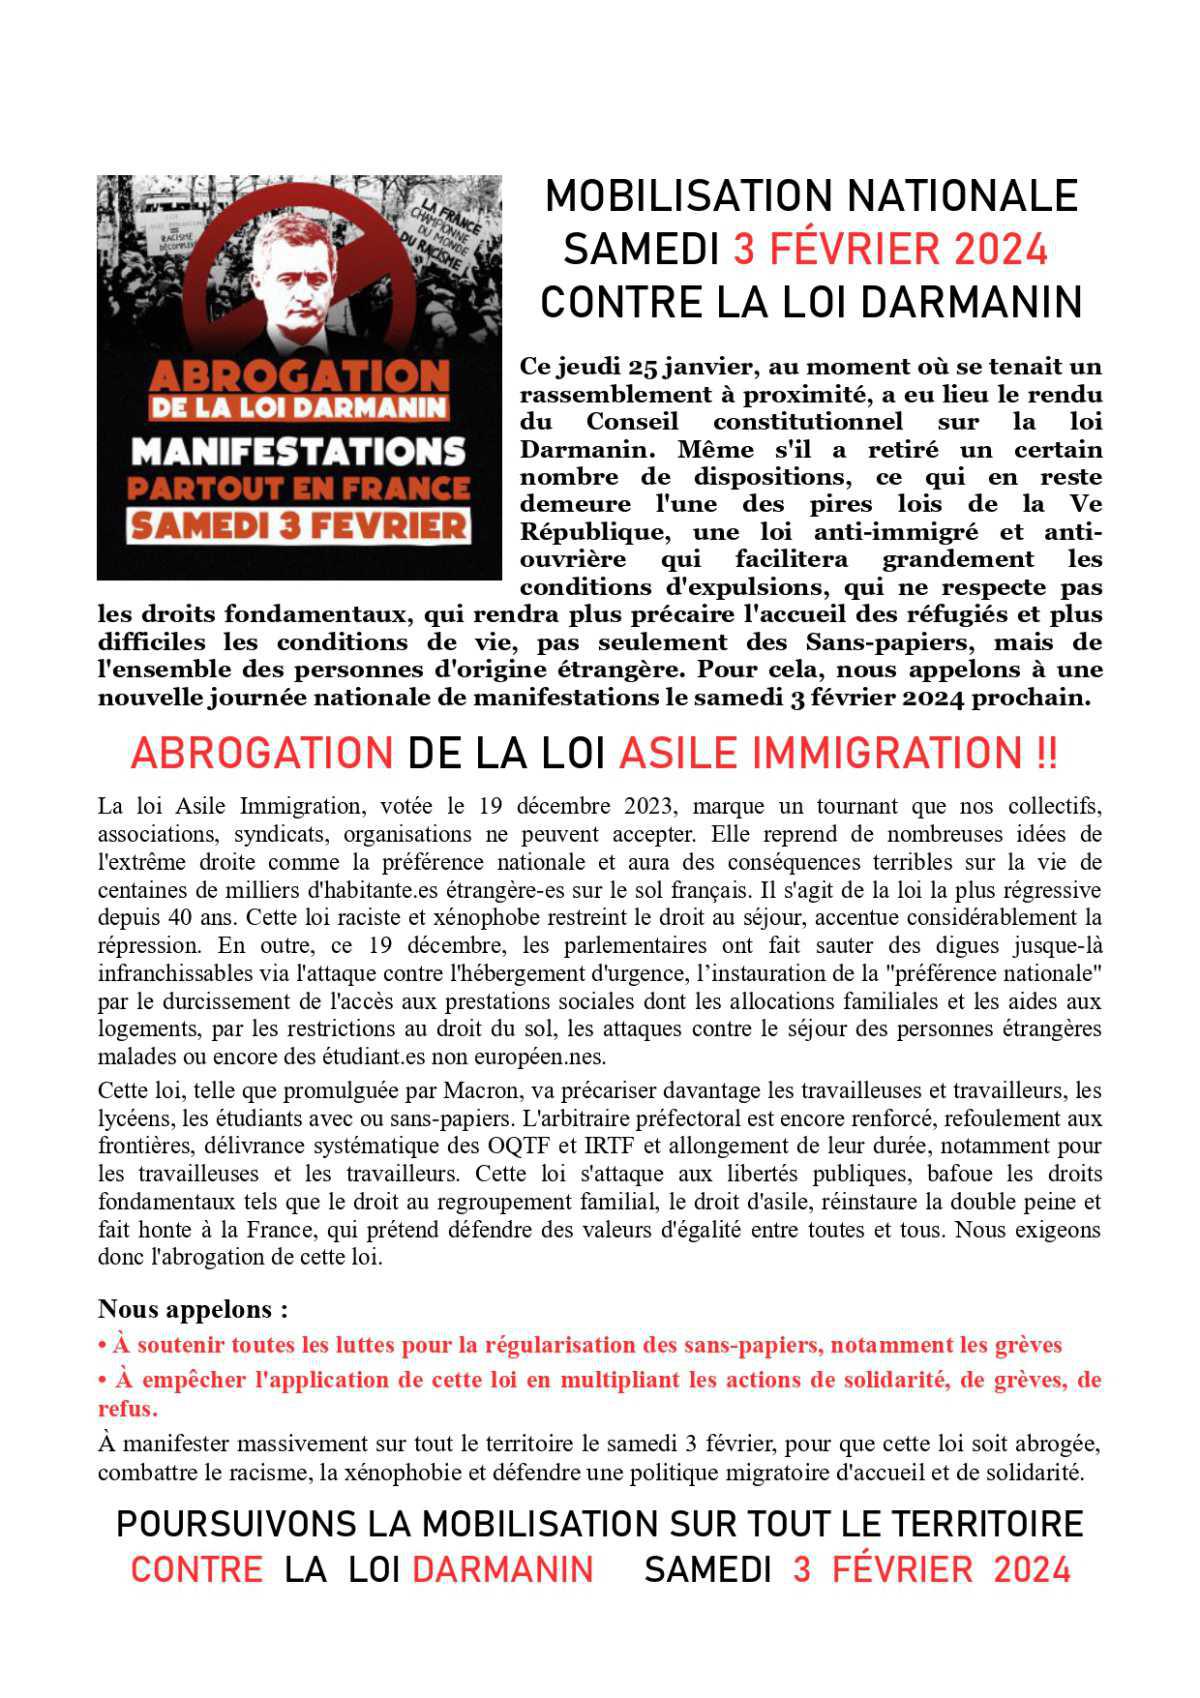 Mobilisation nationale le samedi 3 février 2024 contre la loi Darmanin / Asile -Immigration